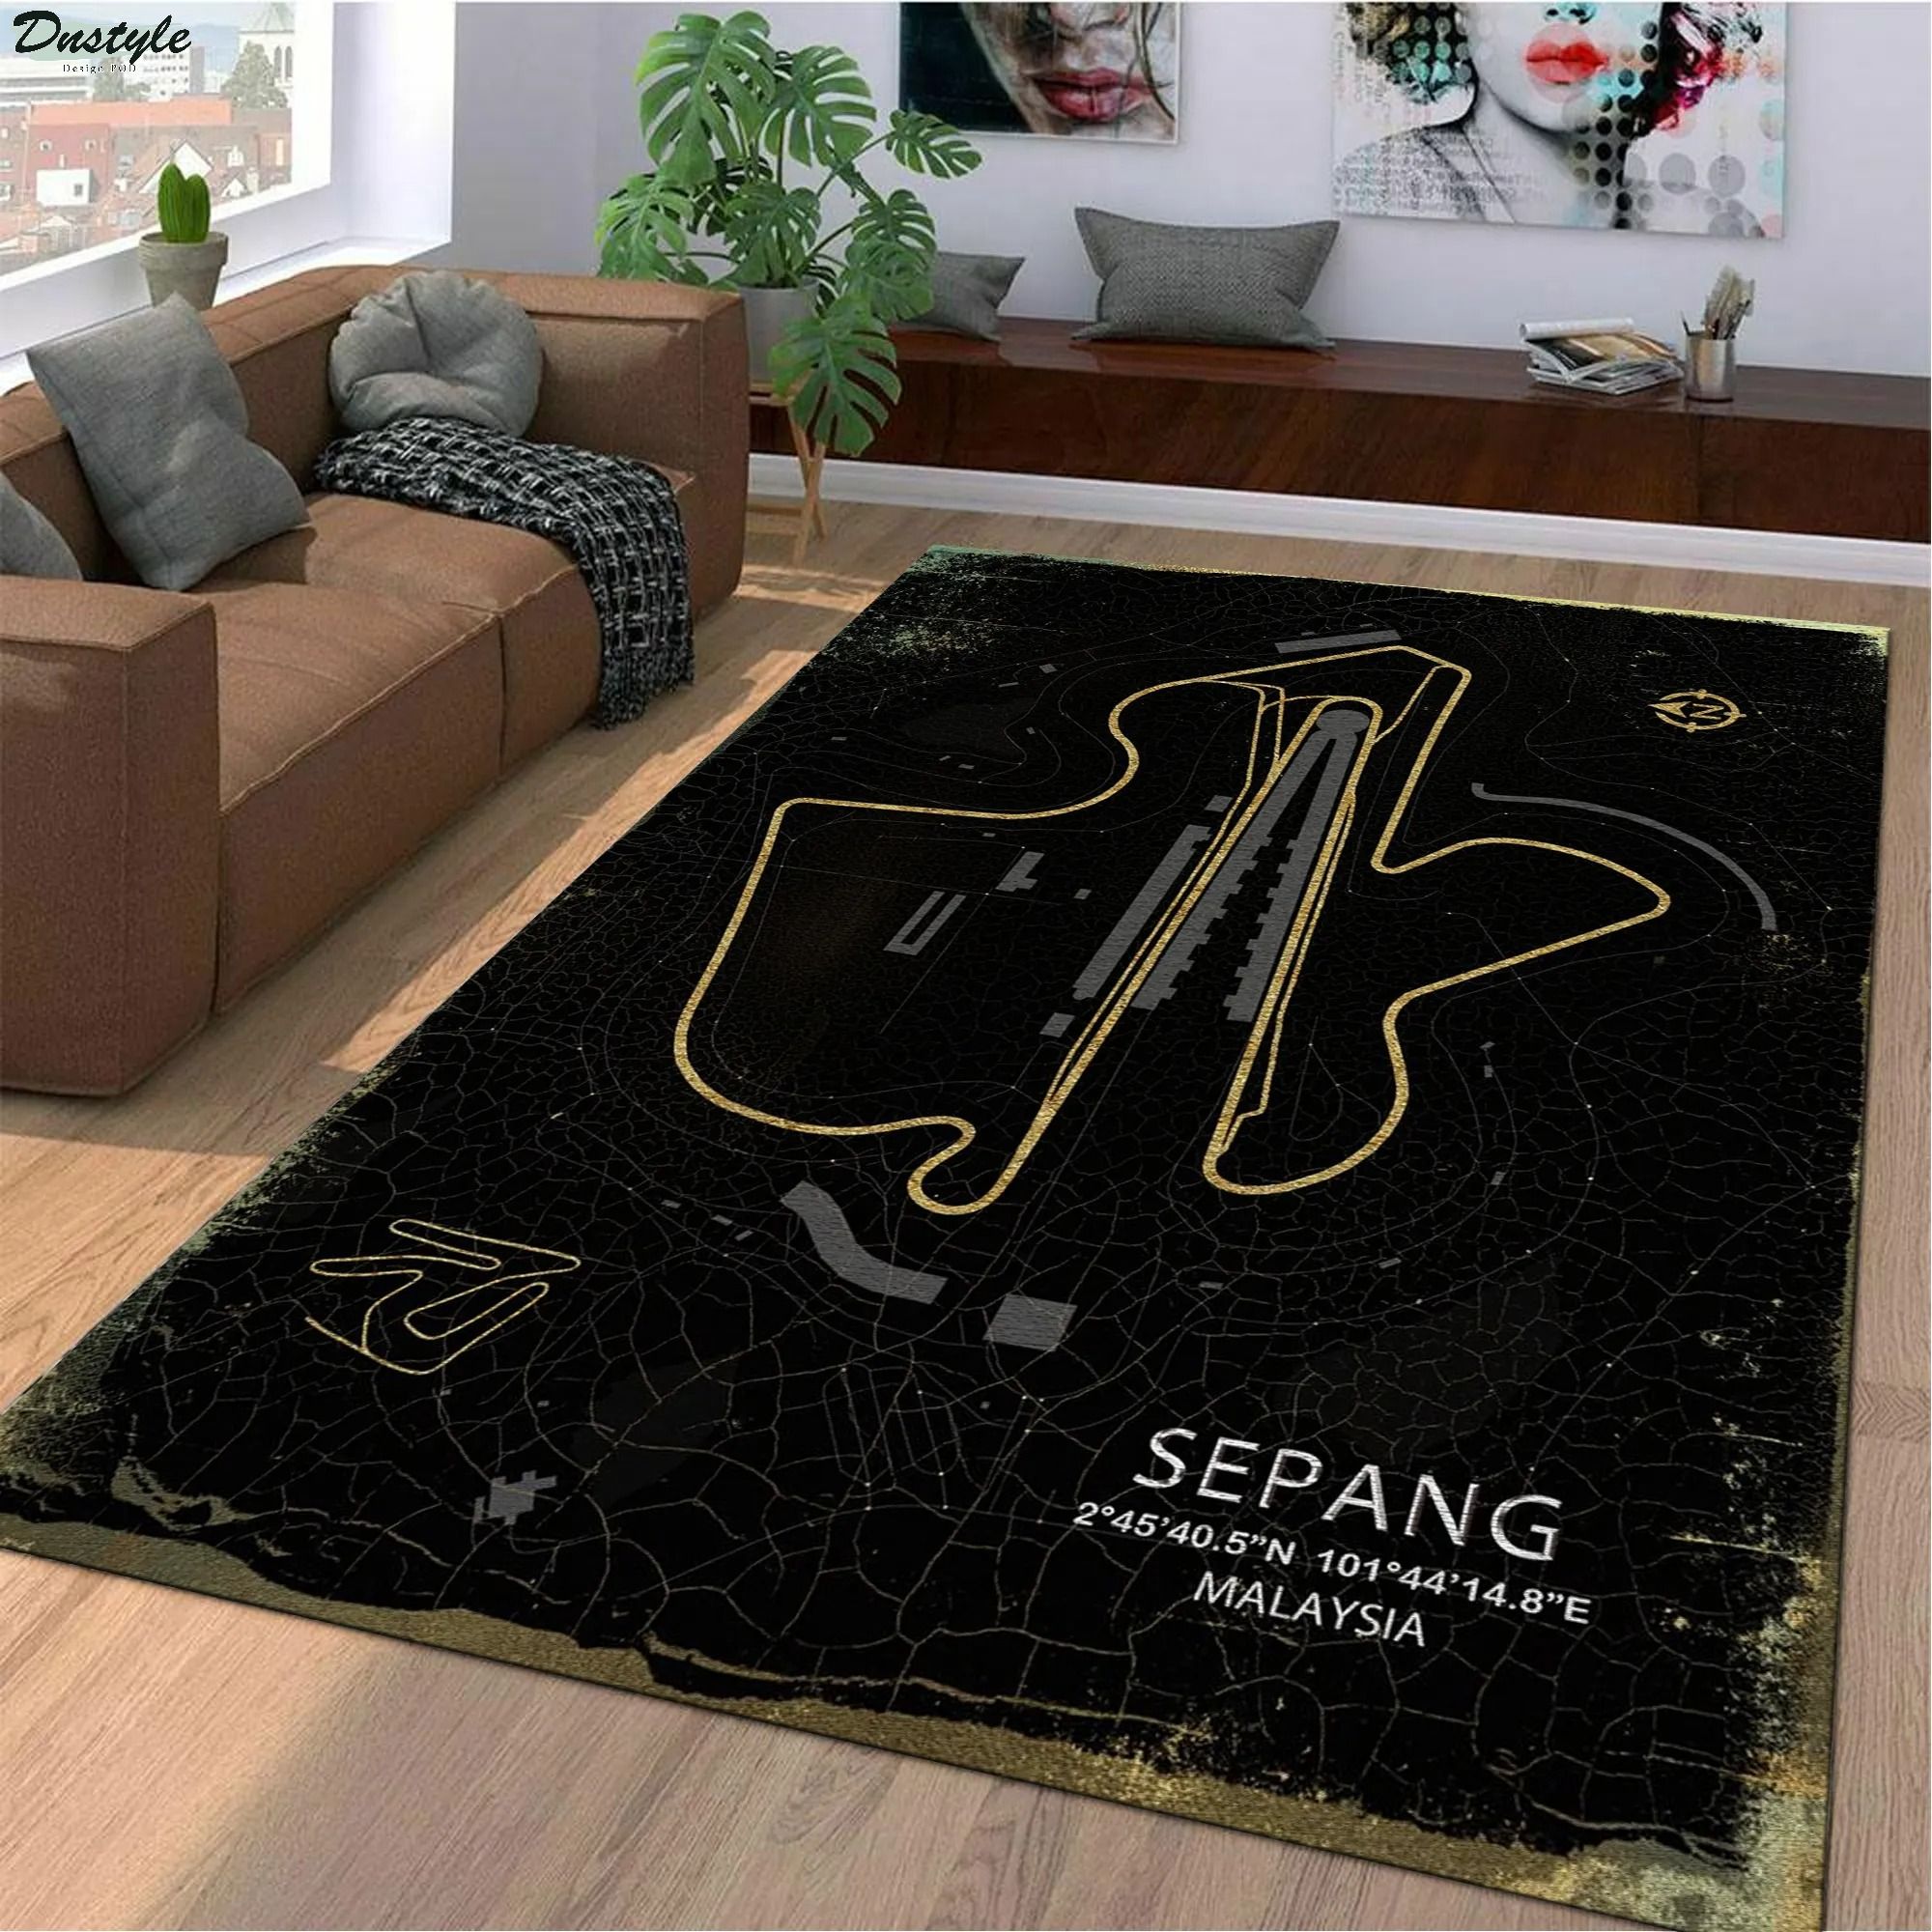 Sepang malaysia f1 track rug